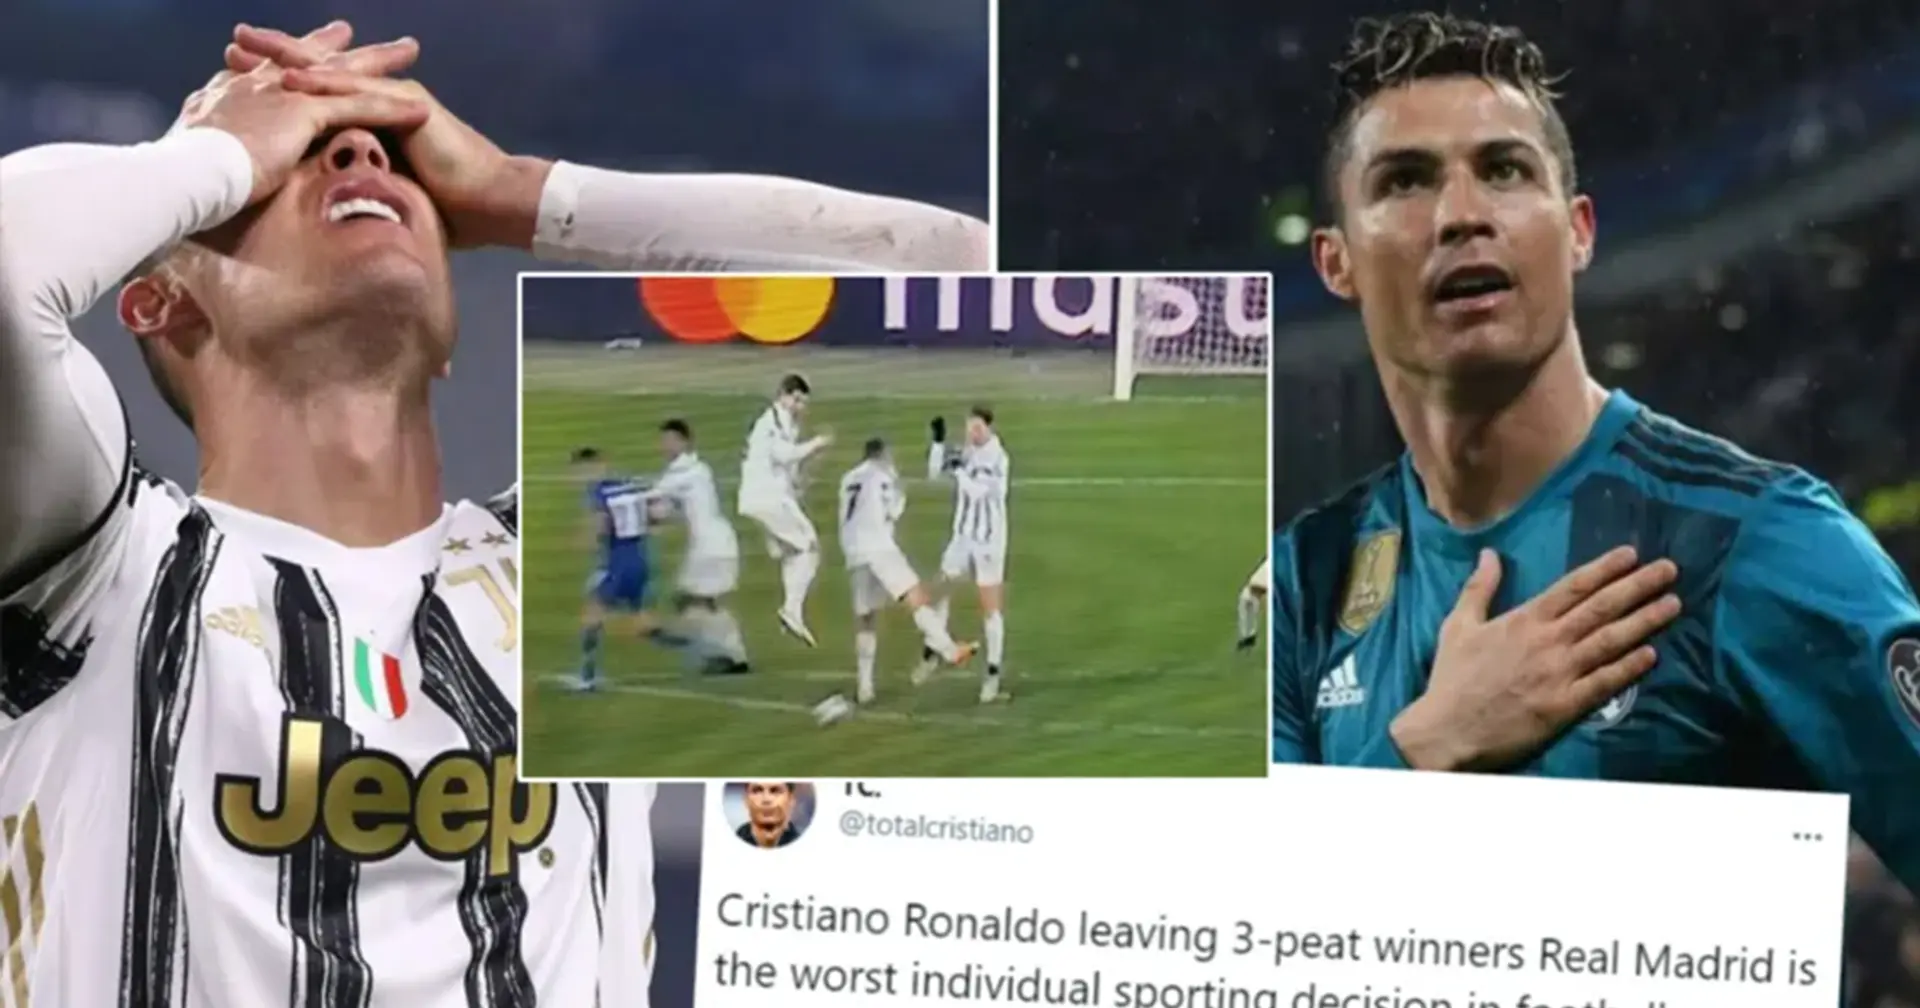 'Solo puede culparse a sí mismo': un fan dice que la salida de Cristiano del Madrid es la peor decisión individual en la historia del fútbol